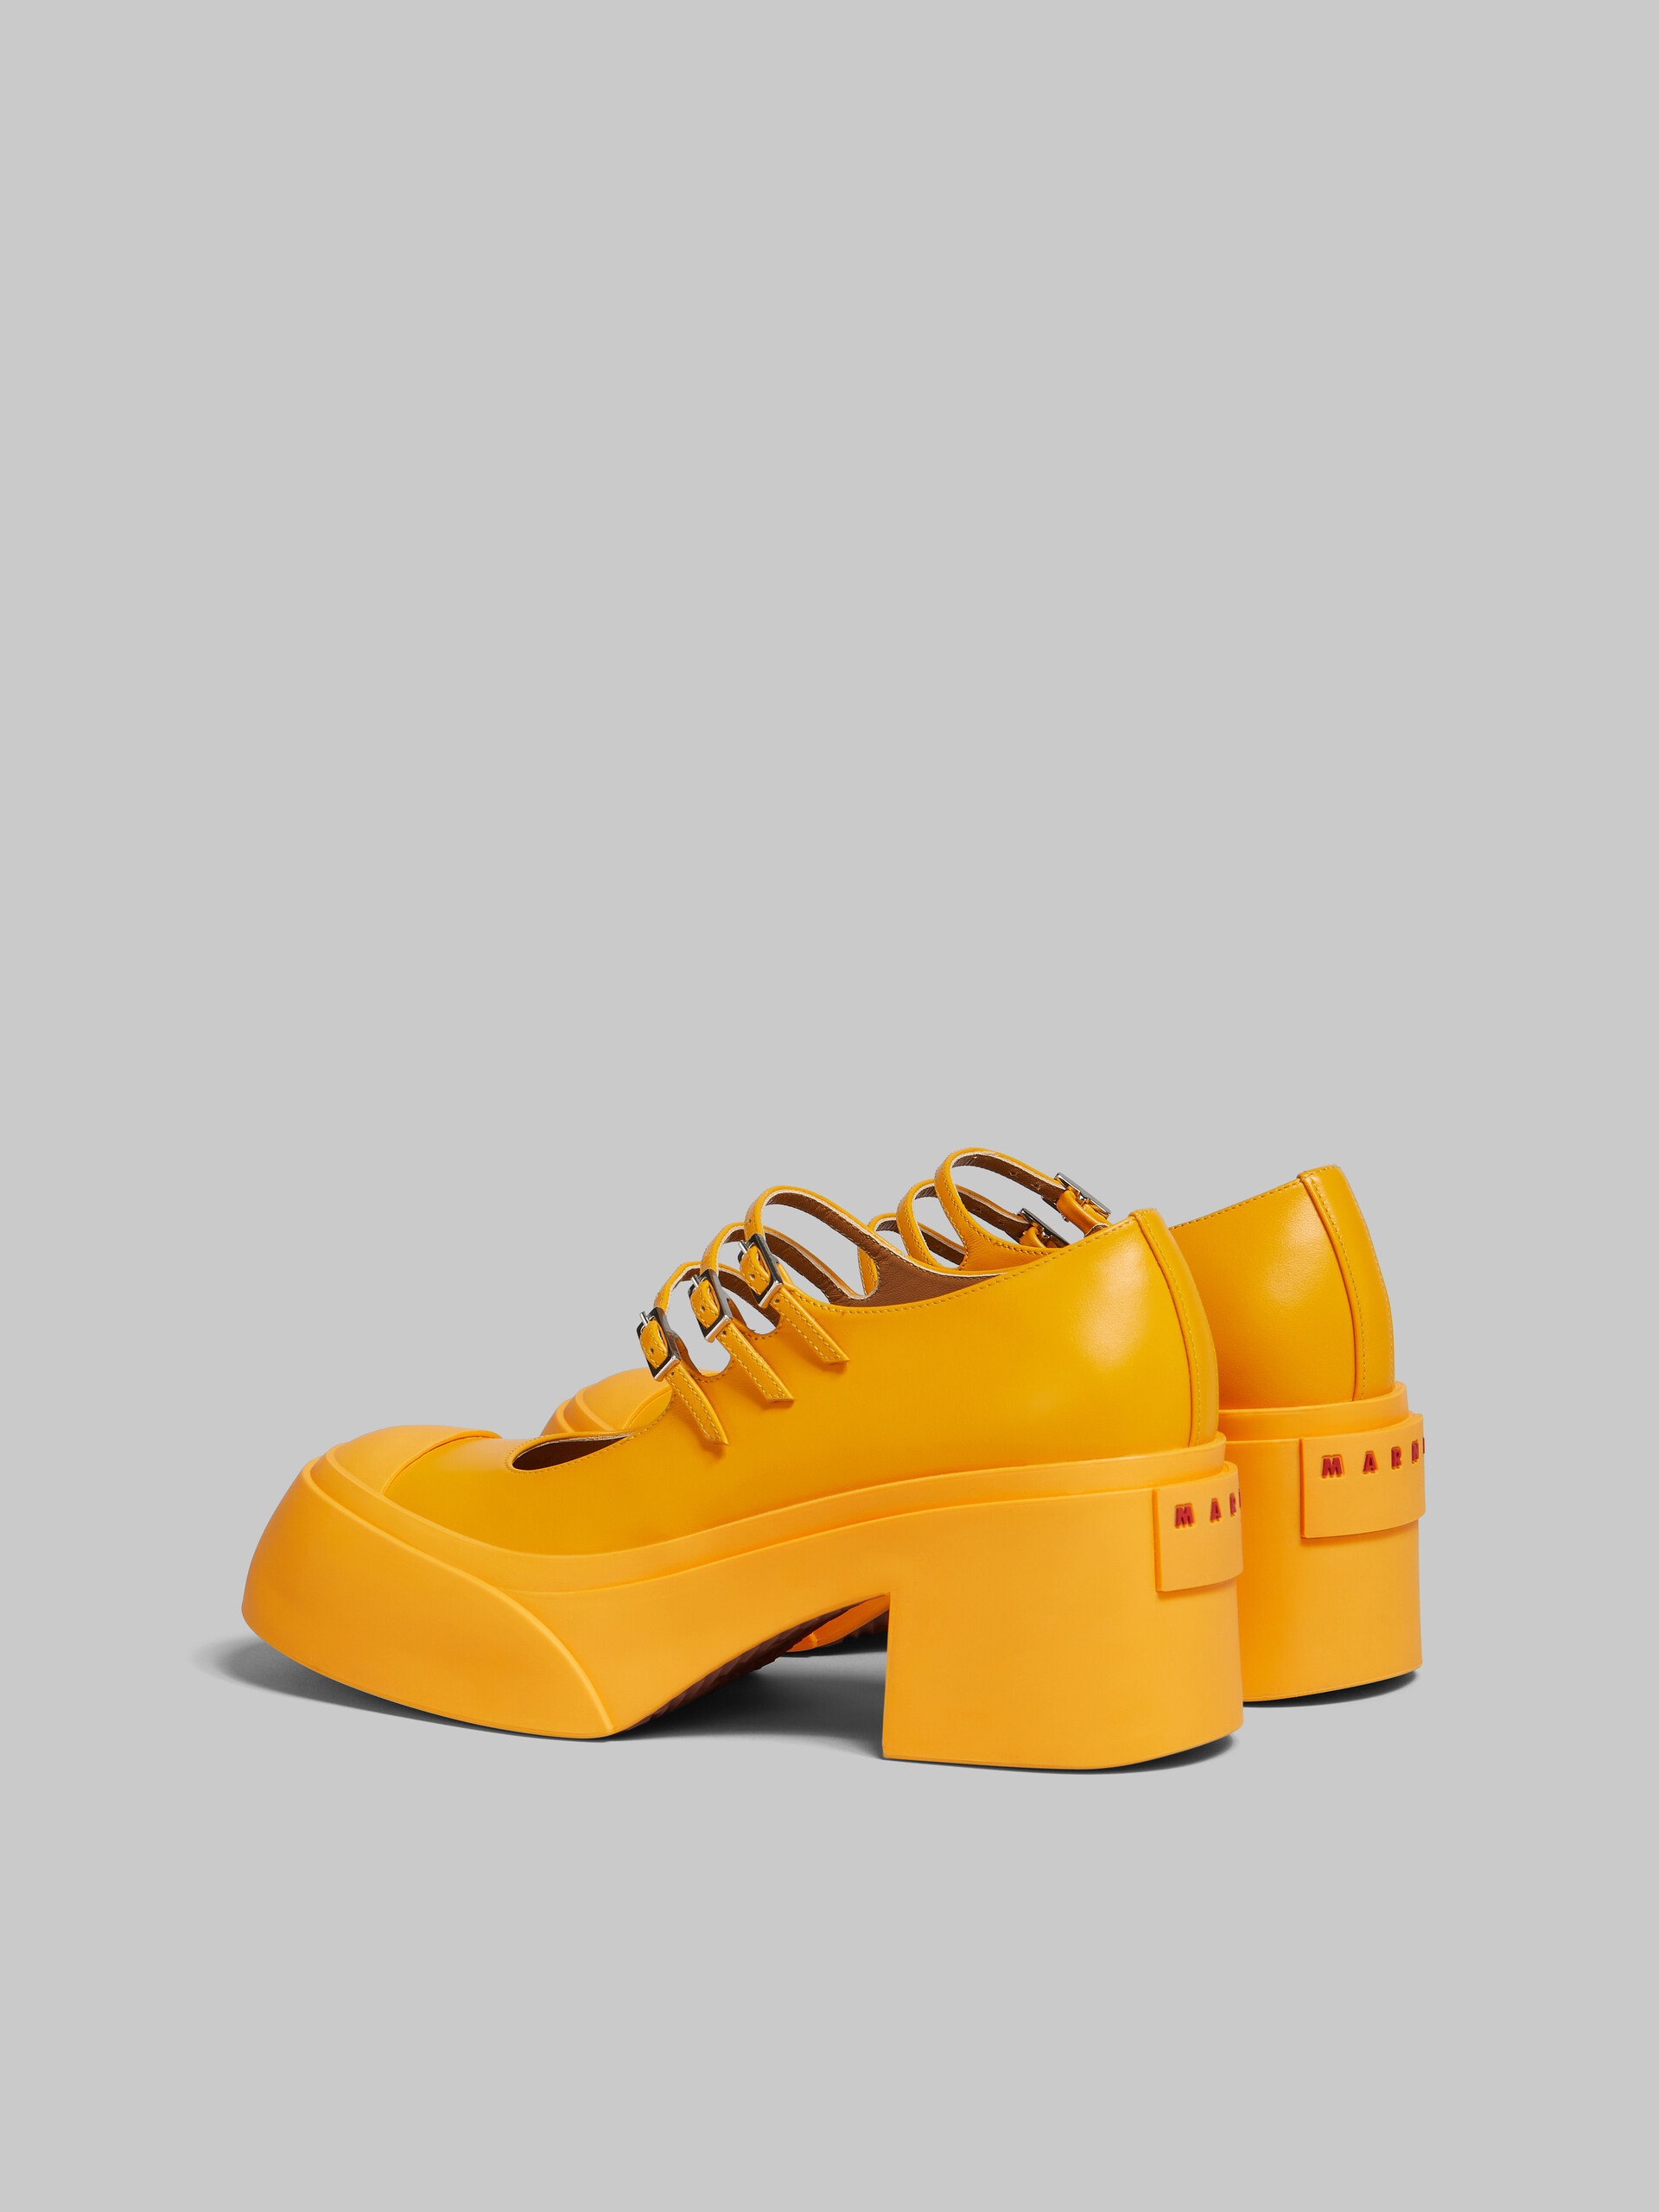 Zapatos Pablo estilo Mary Jane con triple hebilla de piel negra - Sneakers - Image 3